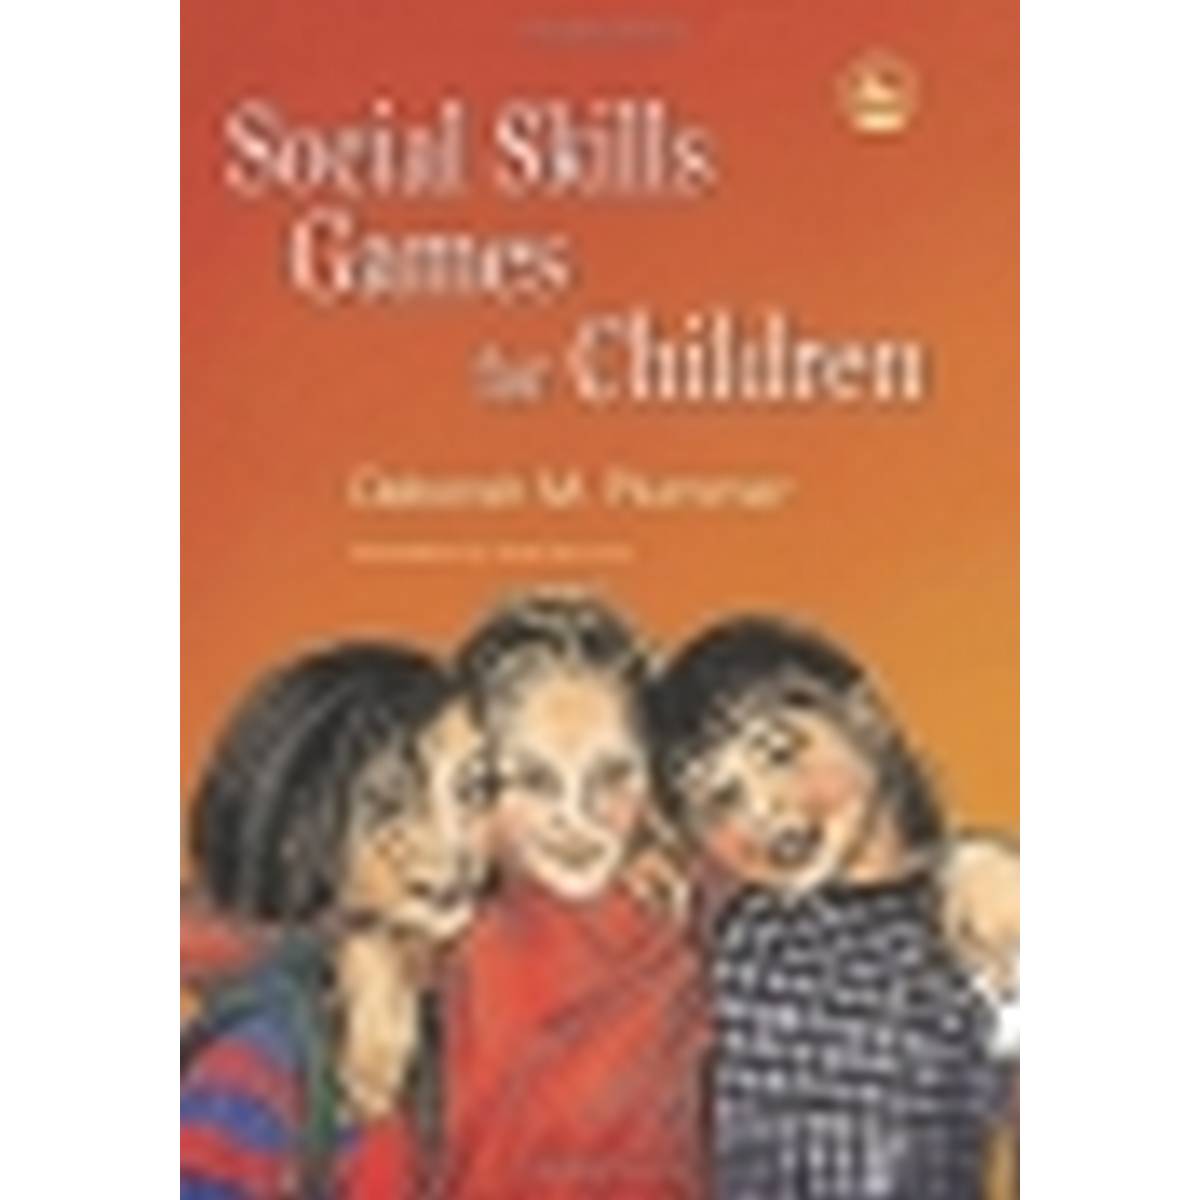 Social Skills Games for Children